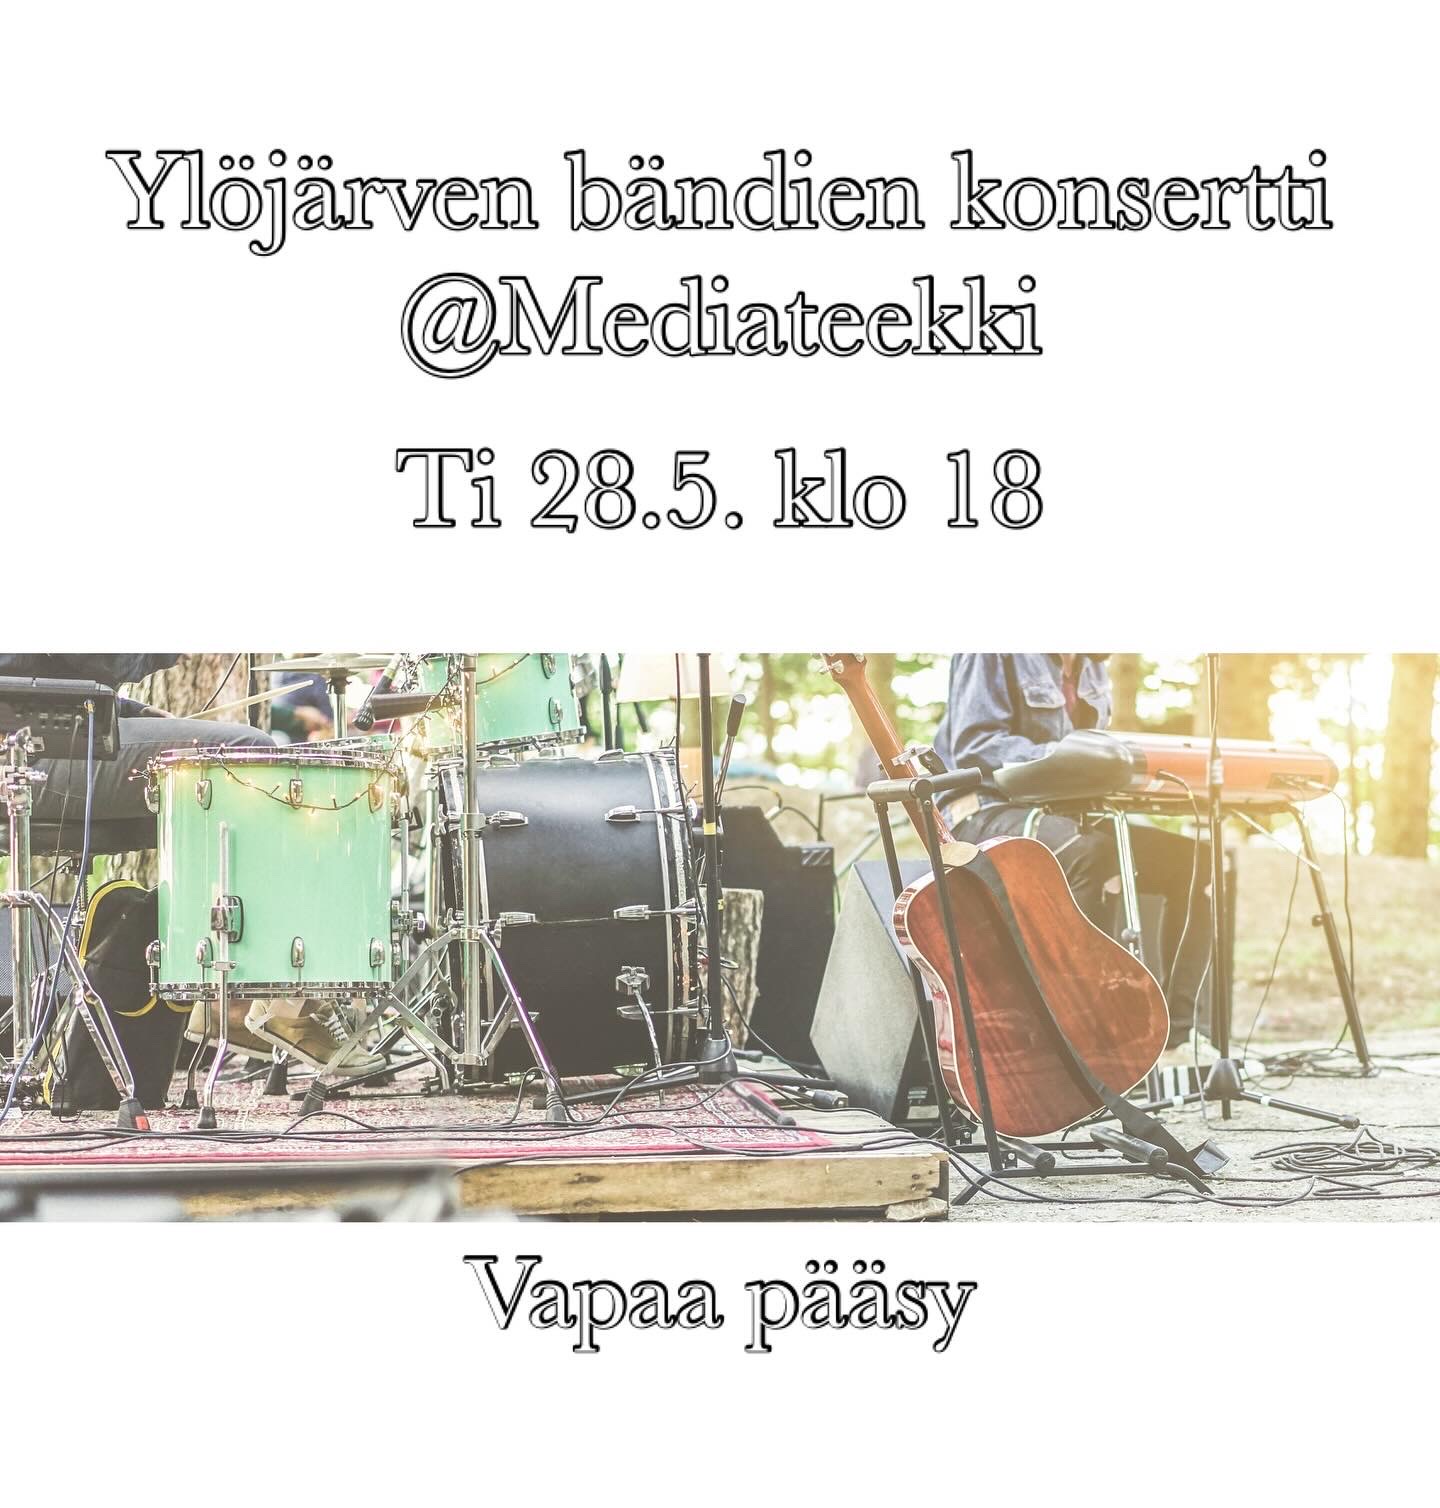 Ylöjärven bändien konsertti Mediateekissa 28.5. klo 18, vapaa pääsy. Kuvassa rummut ja kitara esiintymislavalla.